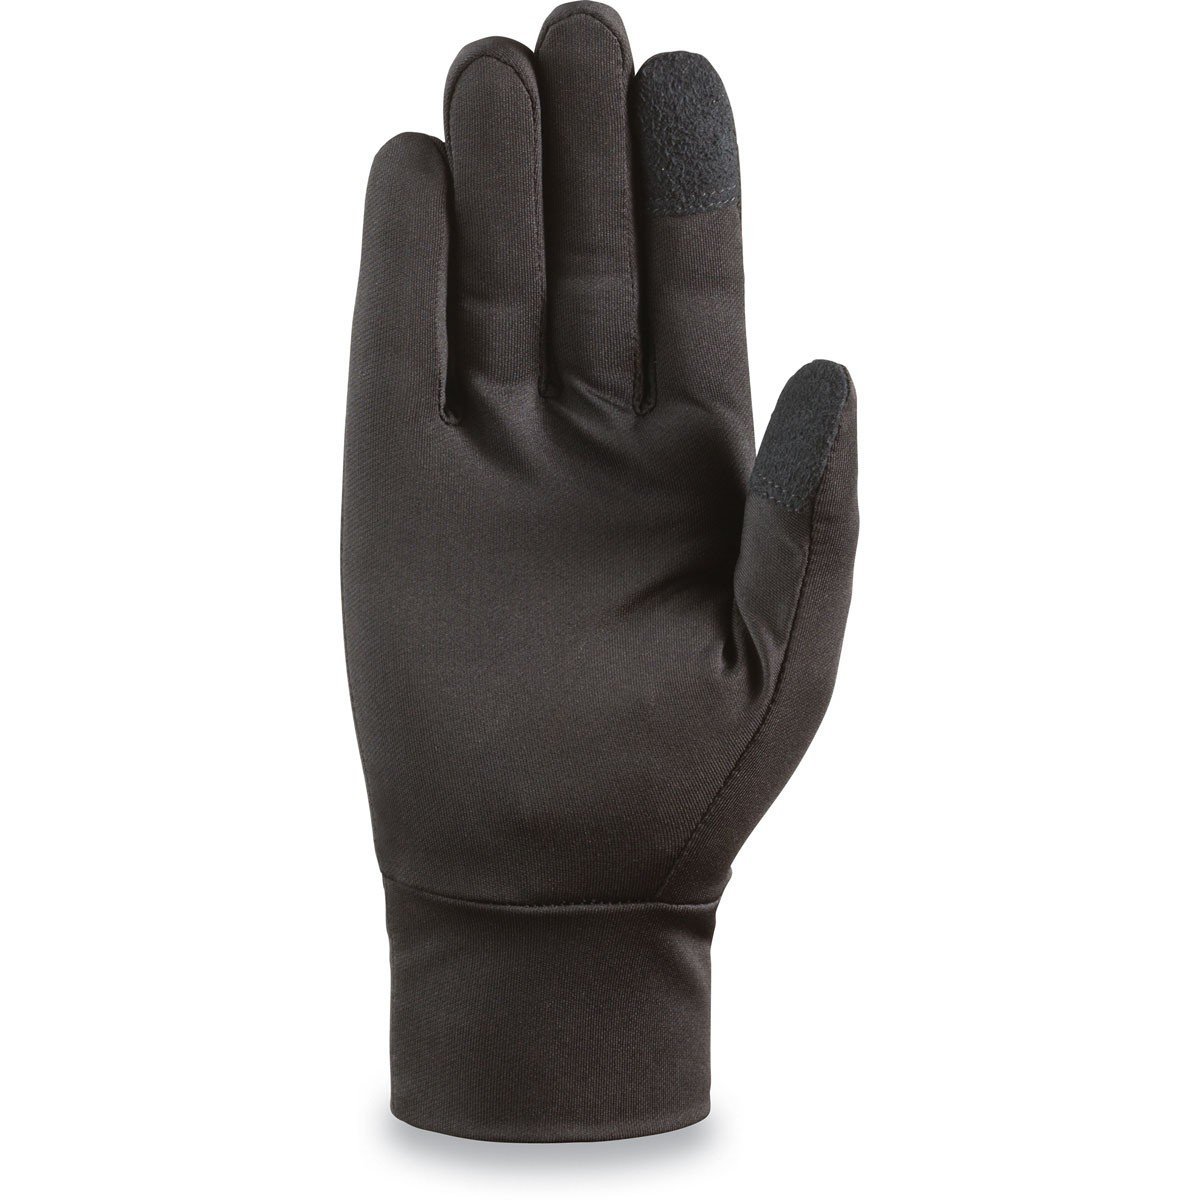 DAKINE Rambler Glove Liner Black WINTER GLOVES - Snowboard Glove Liners Dakine 